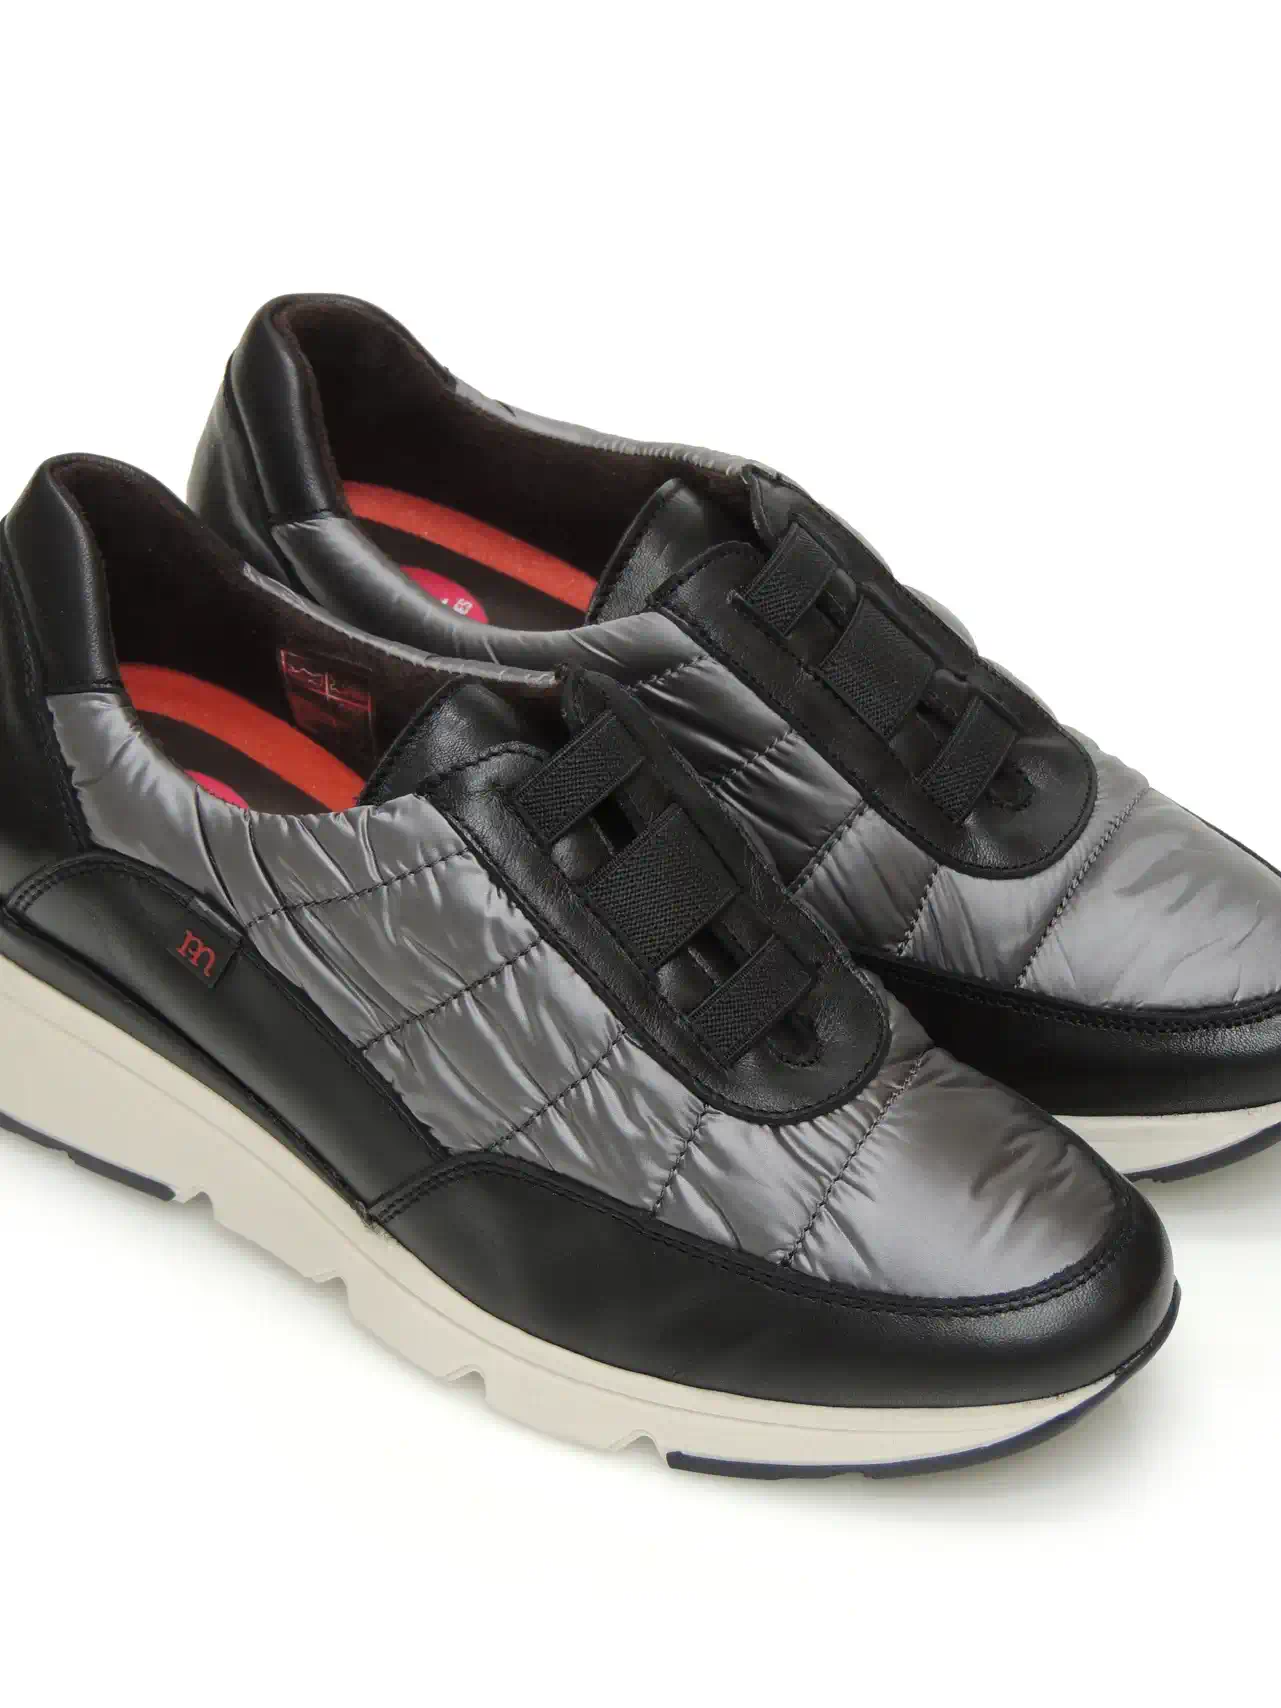 sneakers--pepe menargues-20947-piel-negro